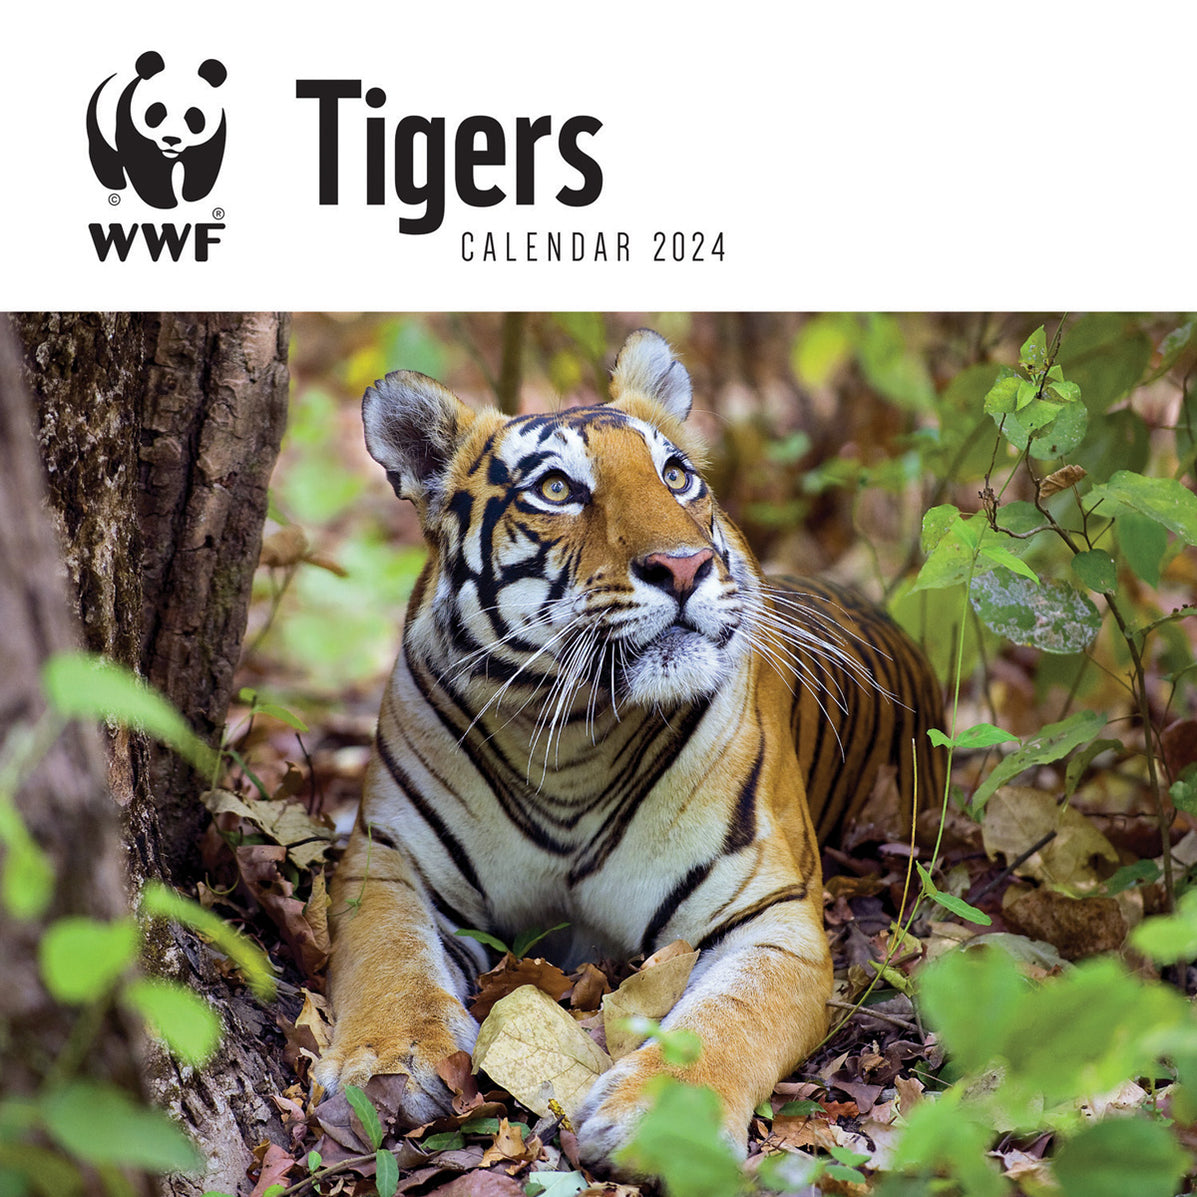 2024 WWF Tigers Wall Calendar — Calendar Club